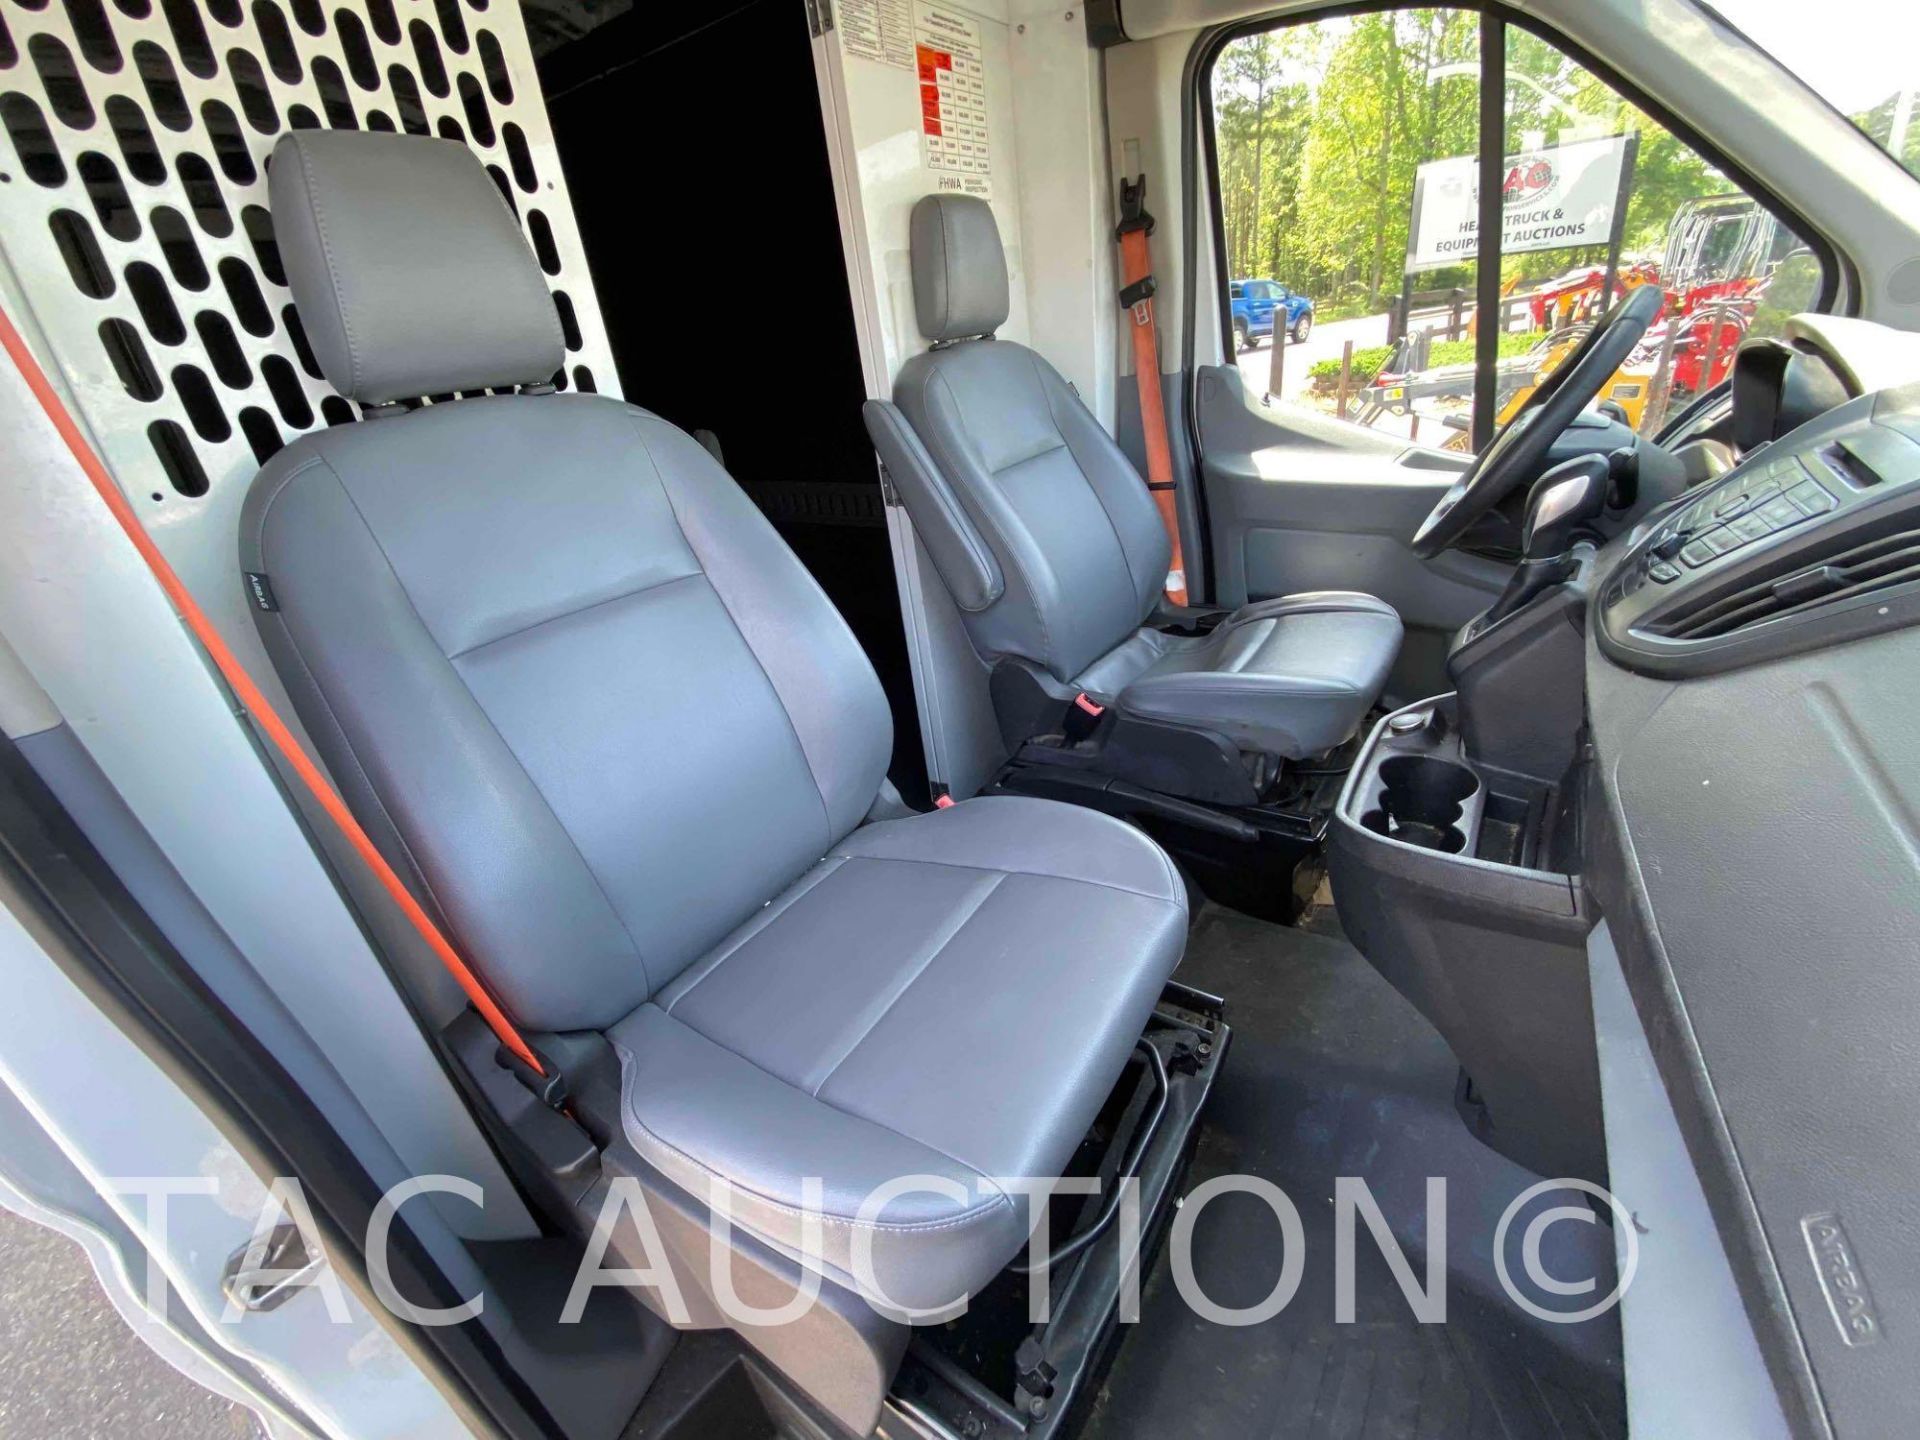 2019 Ford Transit 150 Cargo Van - Image 22 of 48